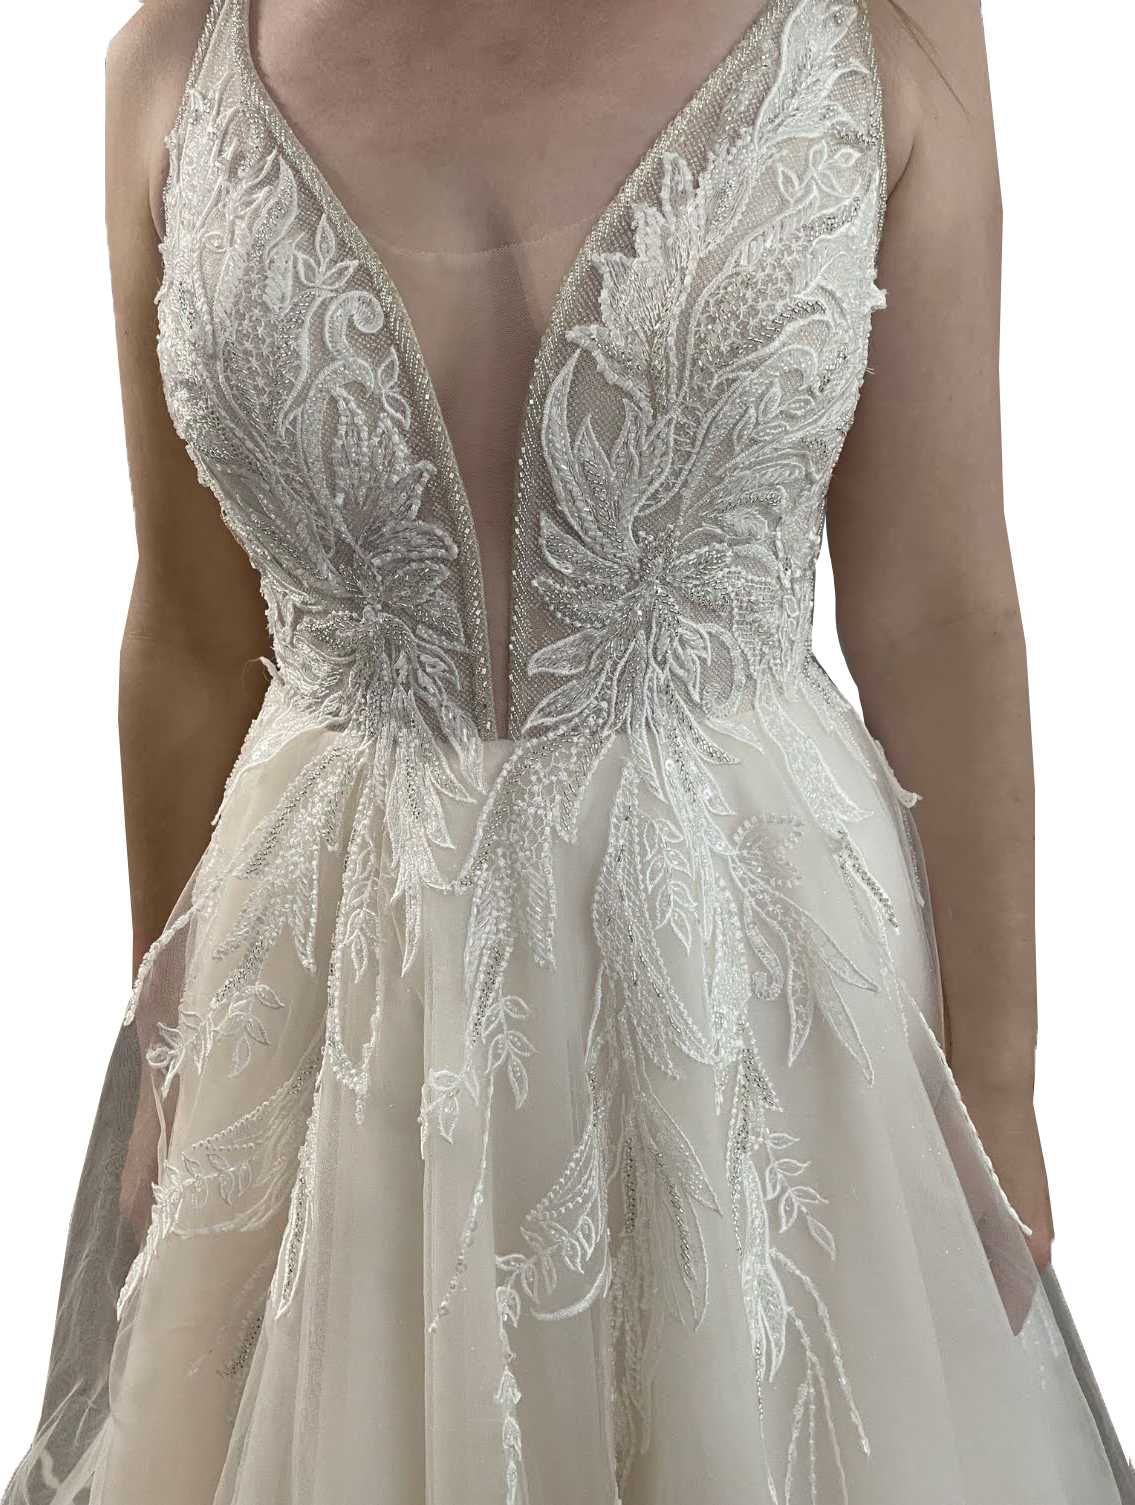 Suknia ślubna M /165 brzoskwiniowa/ecru, wiązany gorset